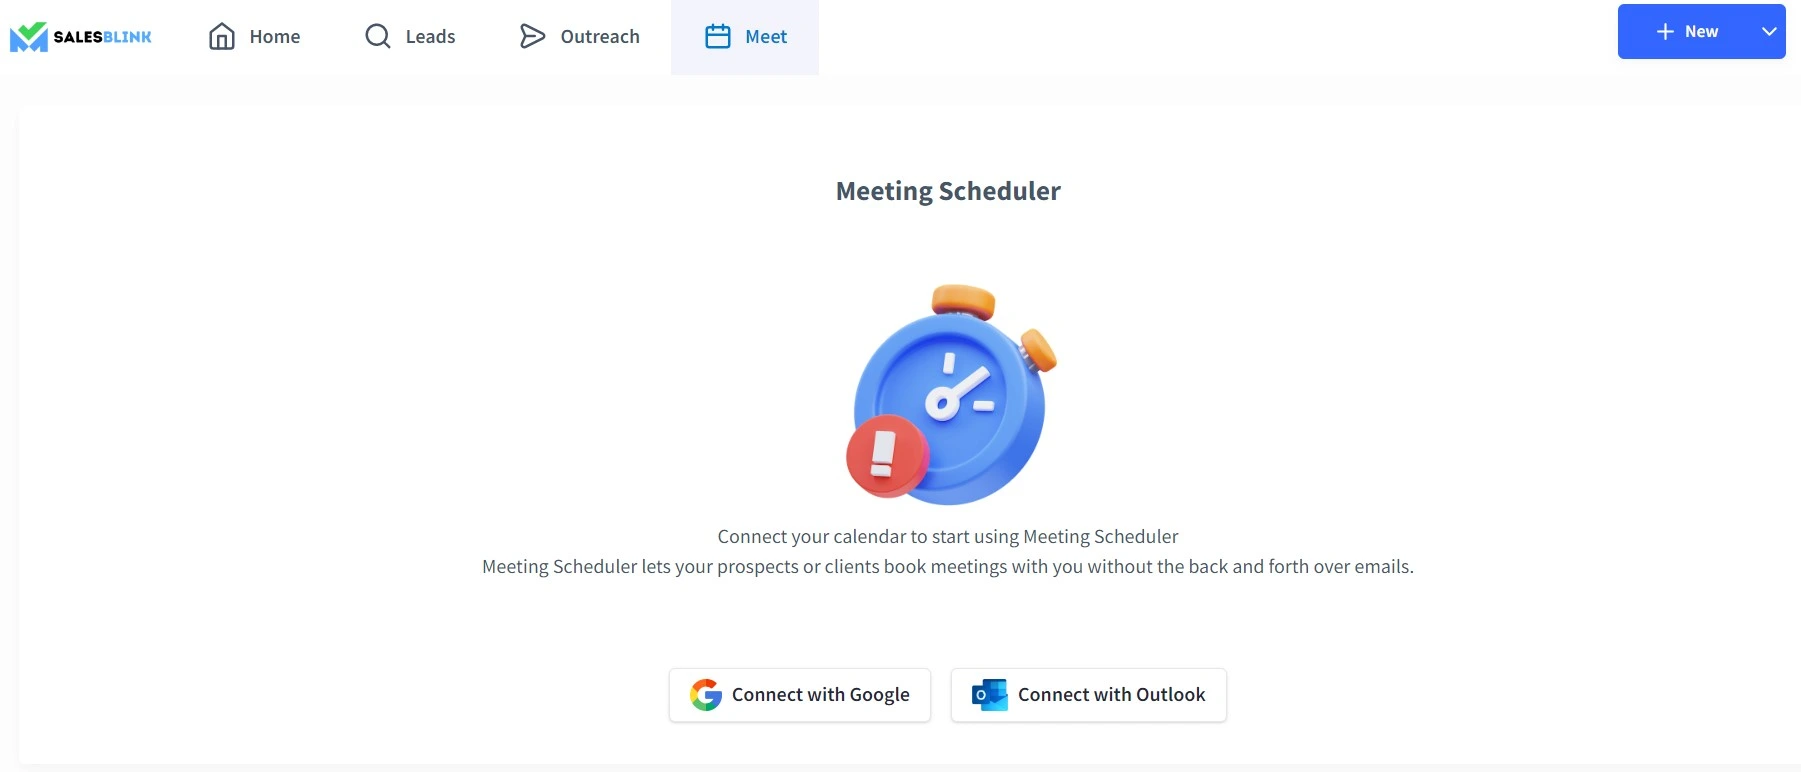 SalesBlink’s Meeting Scheduler